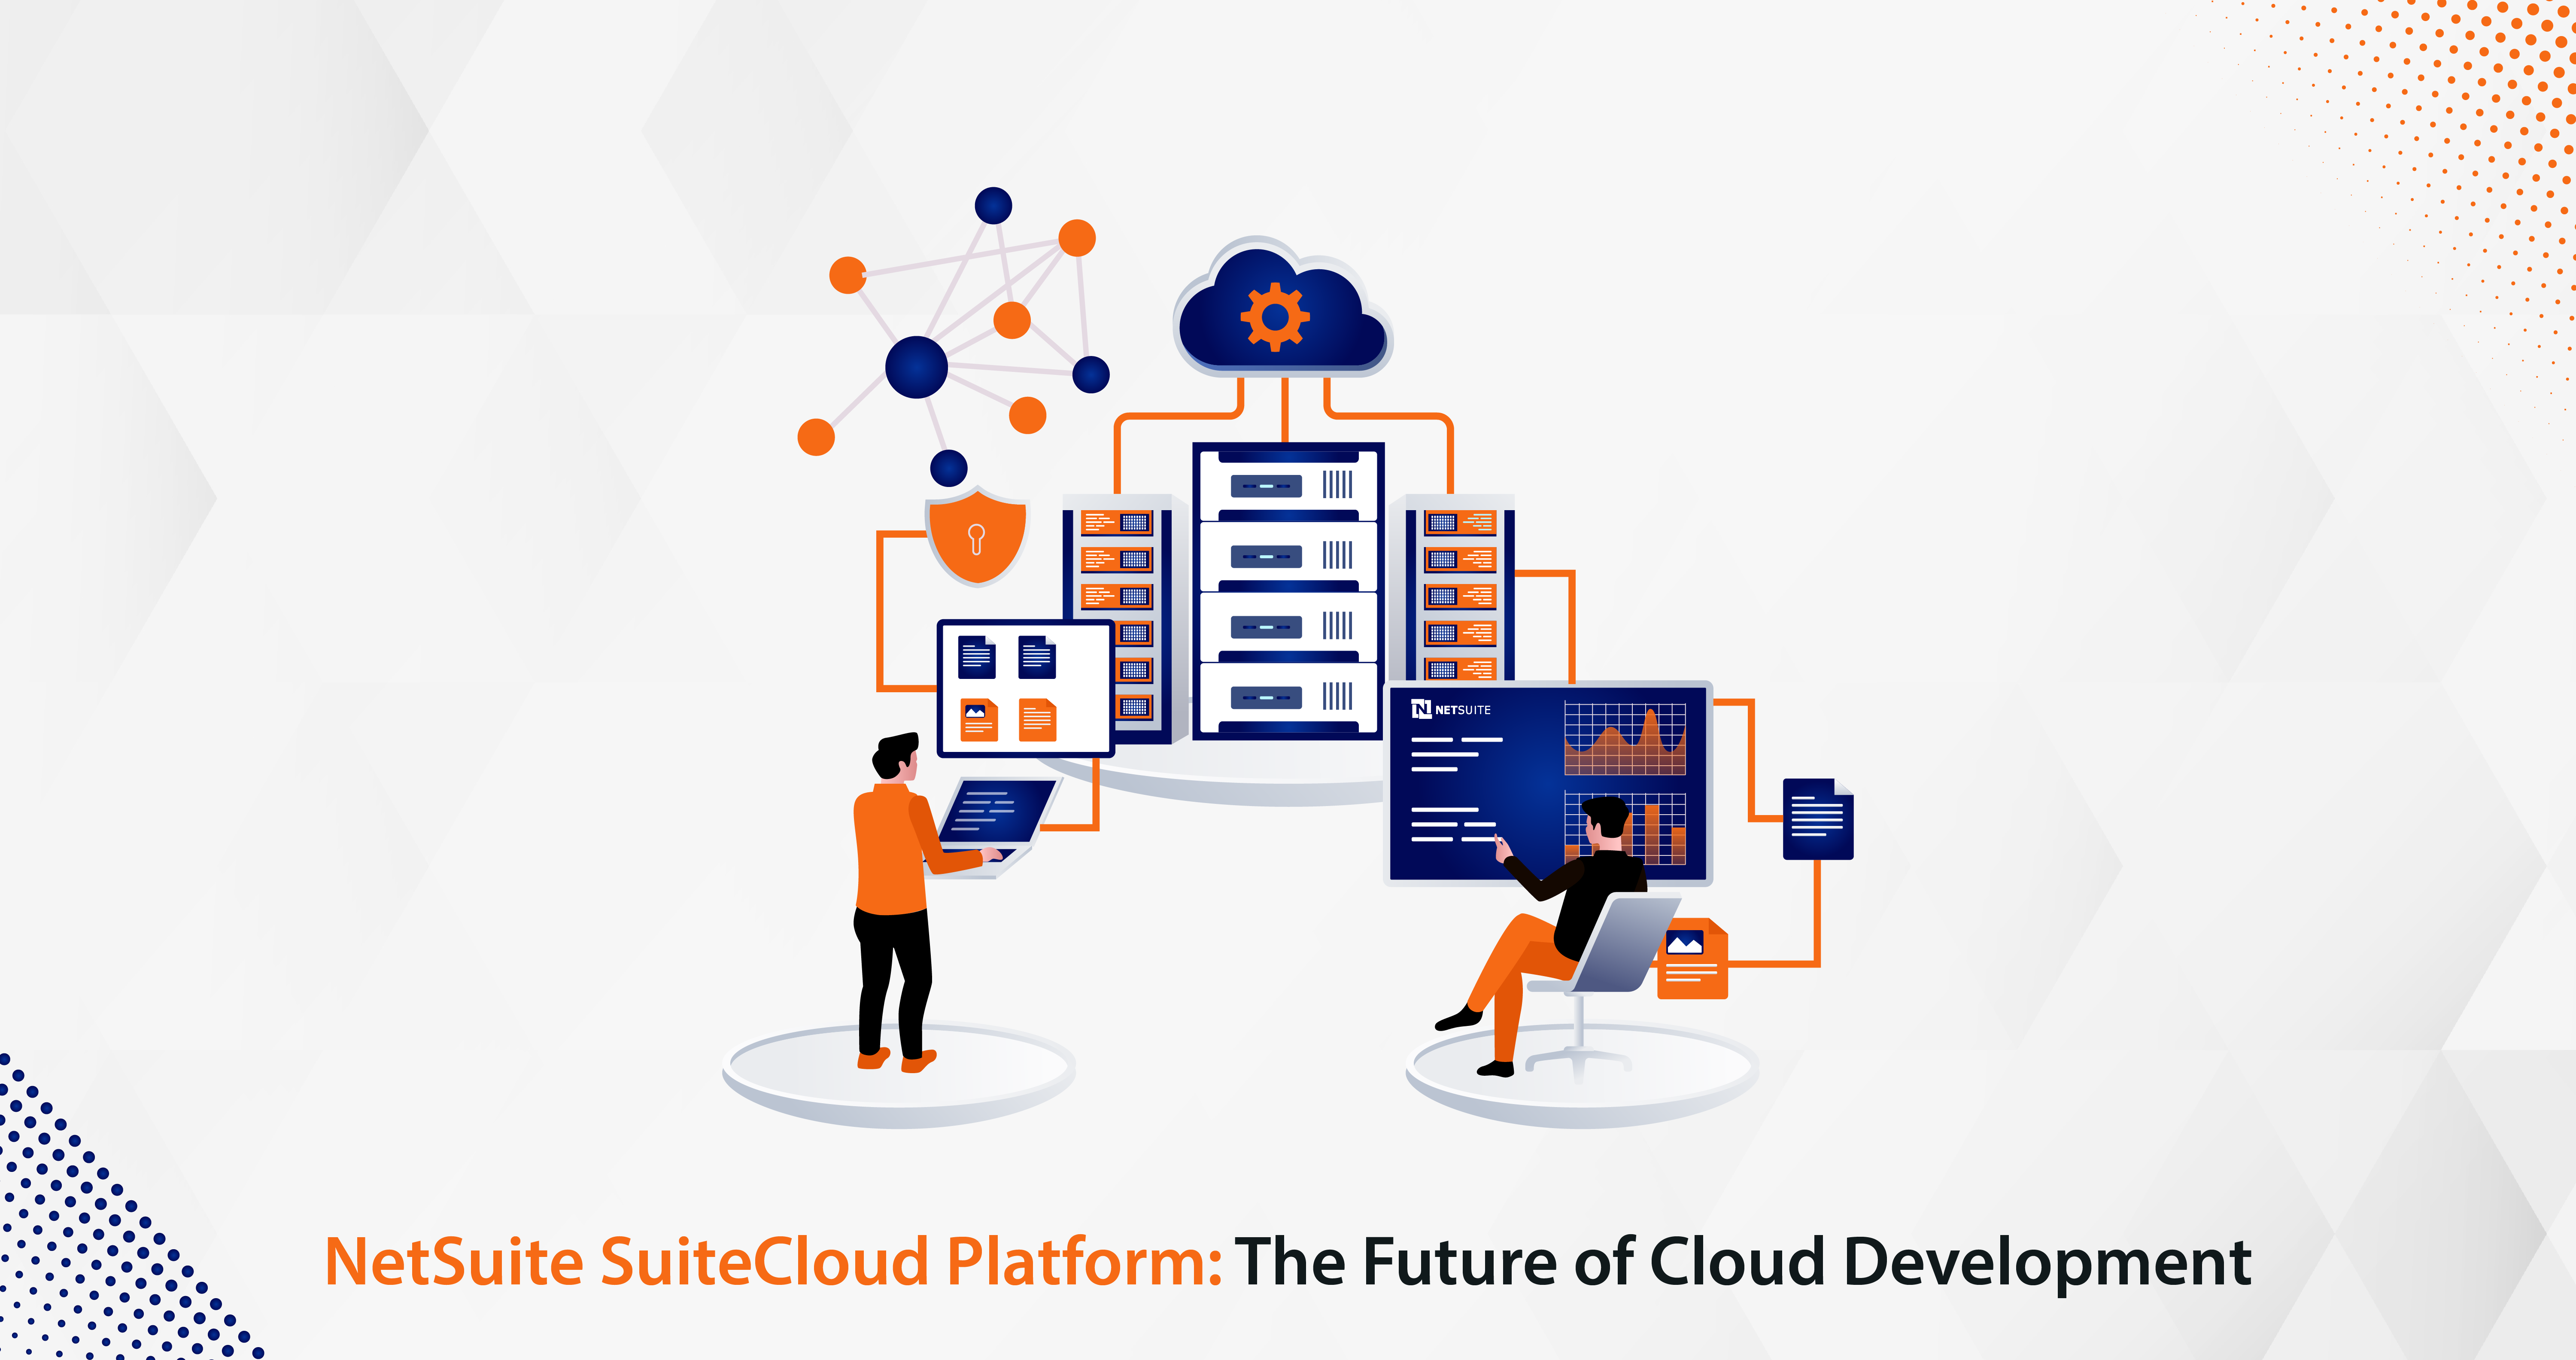 NetSuite SuiteCloud Platform